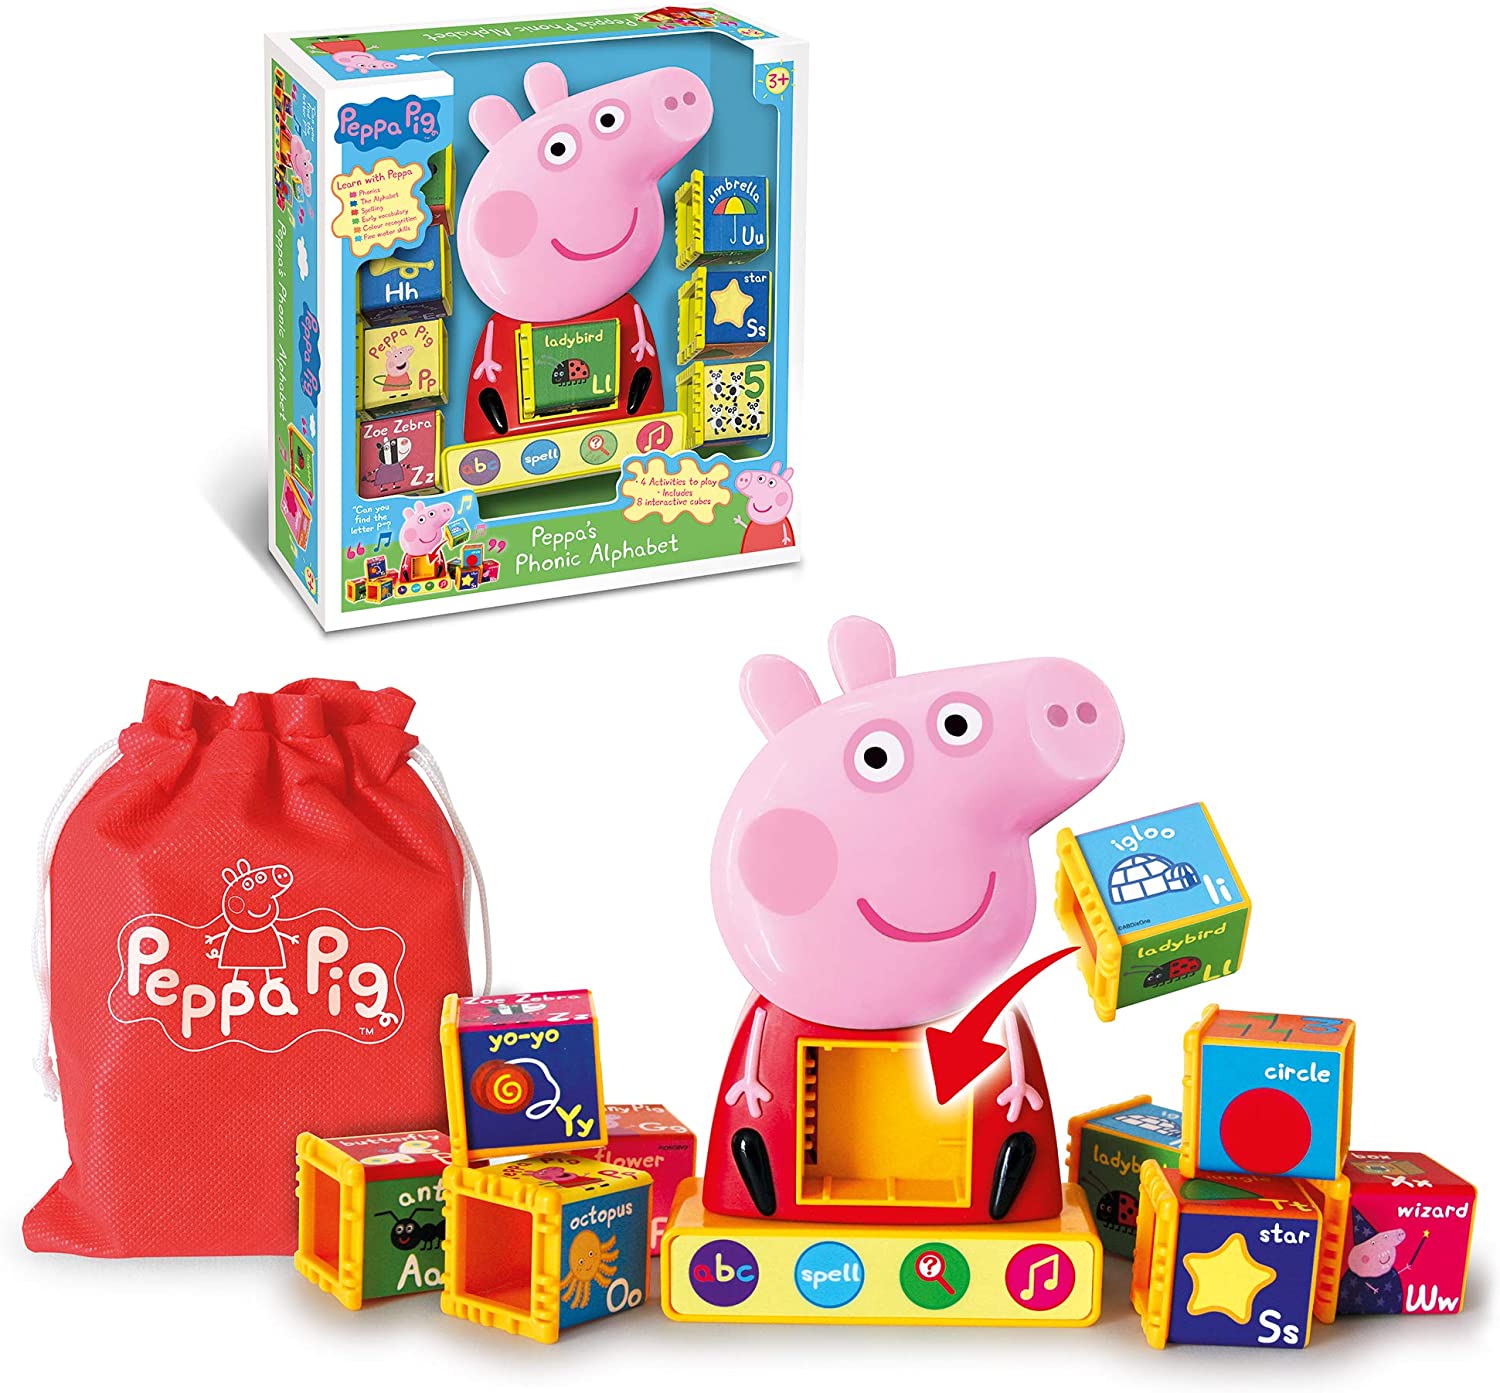 Kleber Variedades - Brinquedos Peppa Pig as crianças amam 👉 Peppa Pig -  Casa Da Familia Pig 4207 Dtc #klebervariedades #brinquedos #papelaria